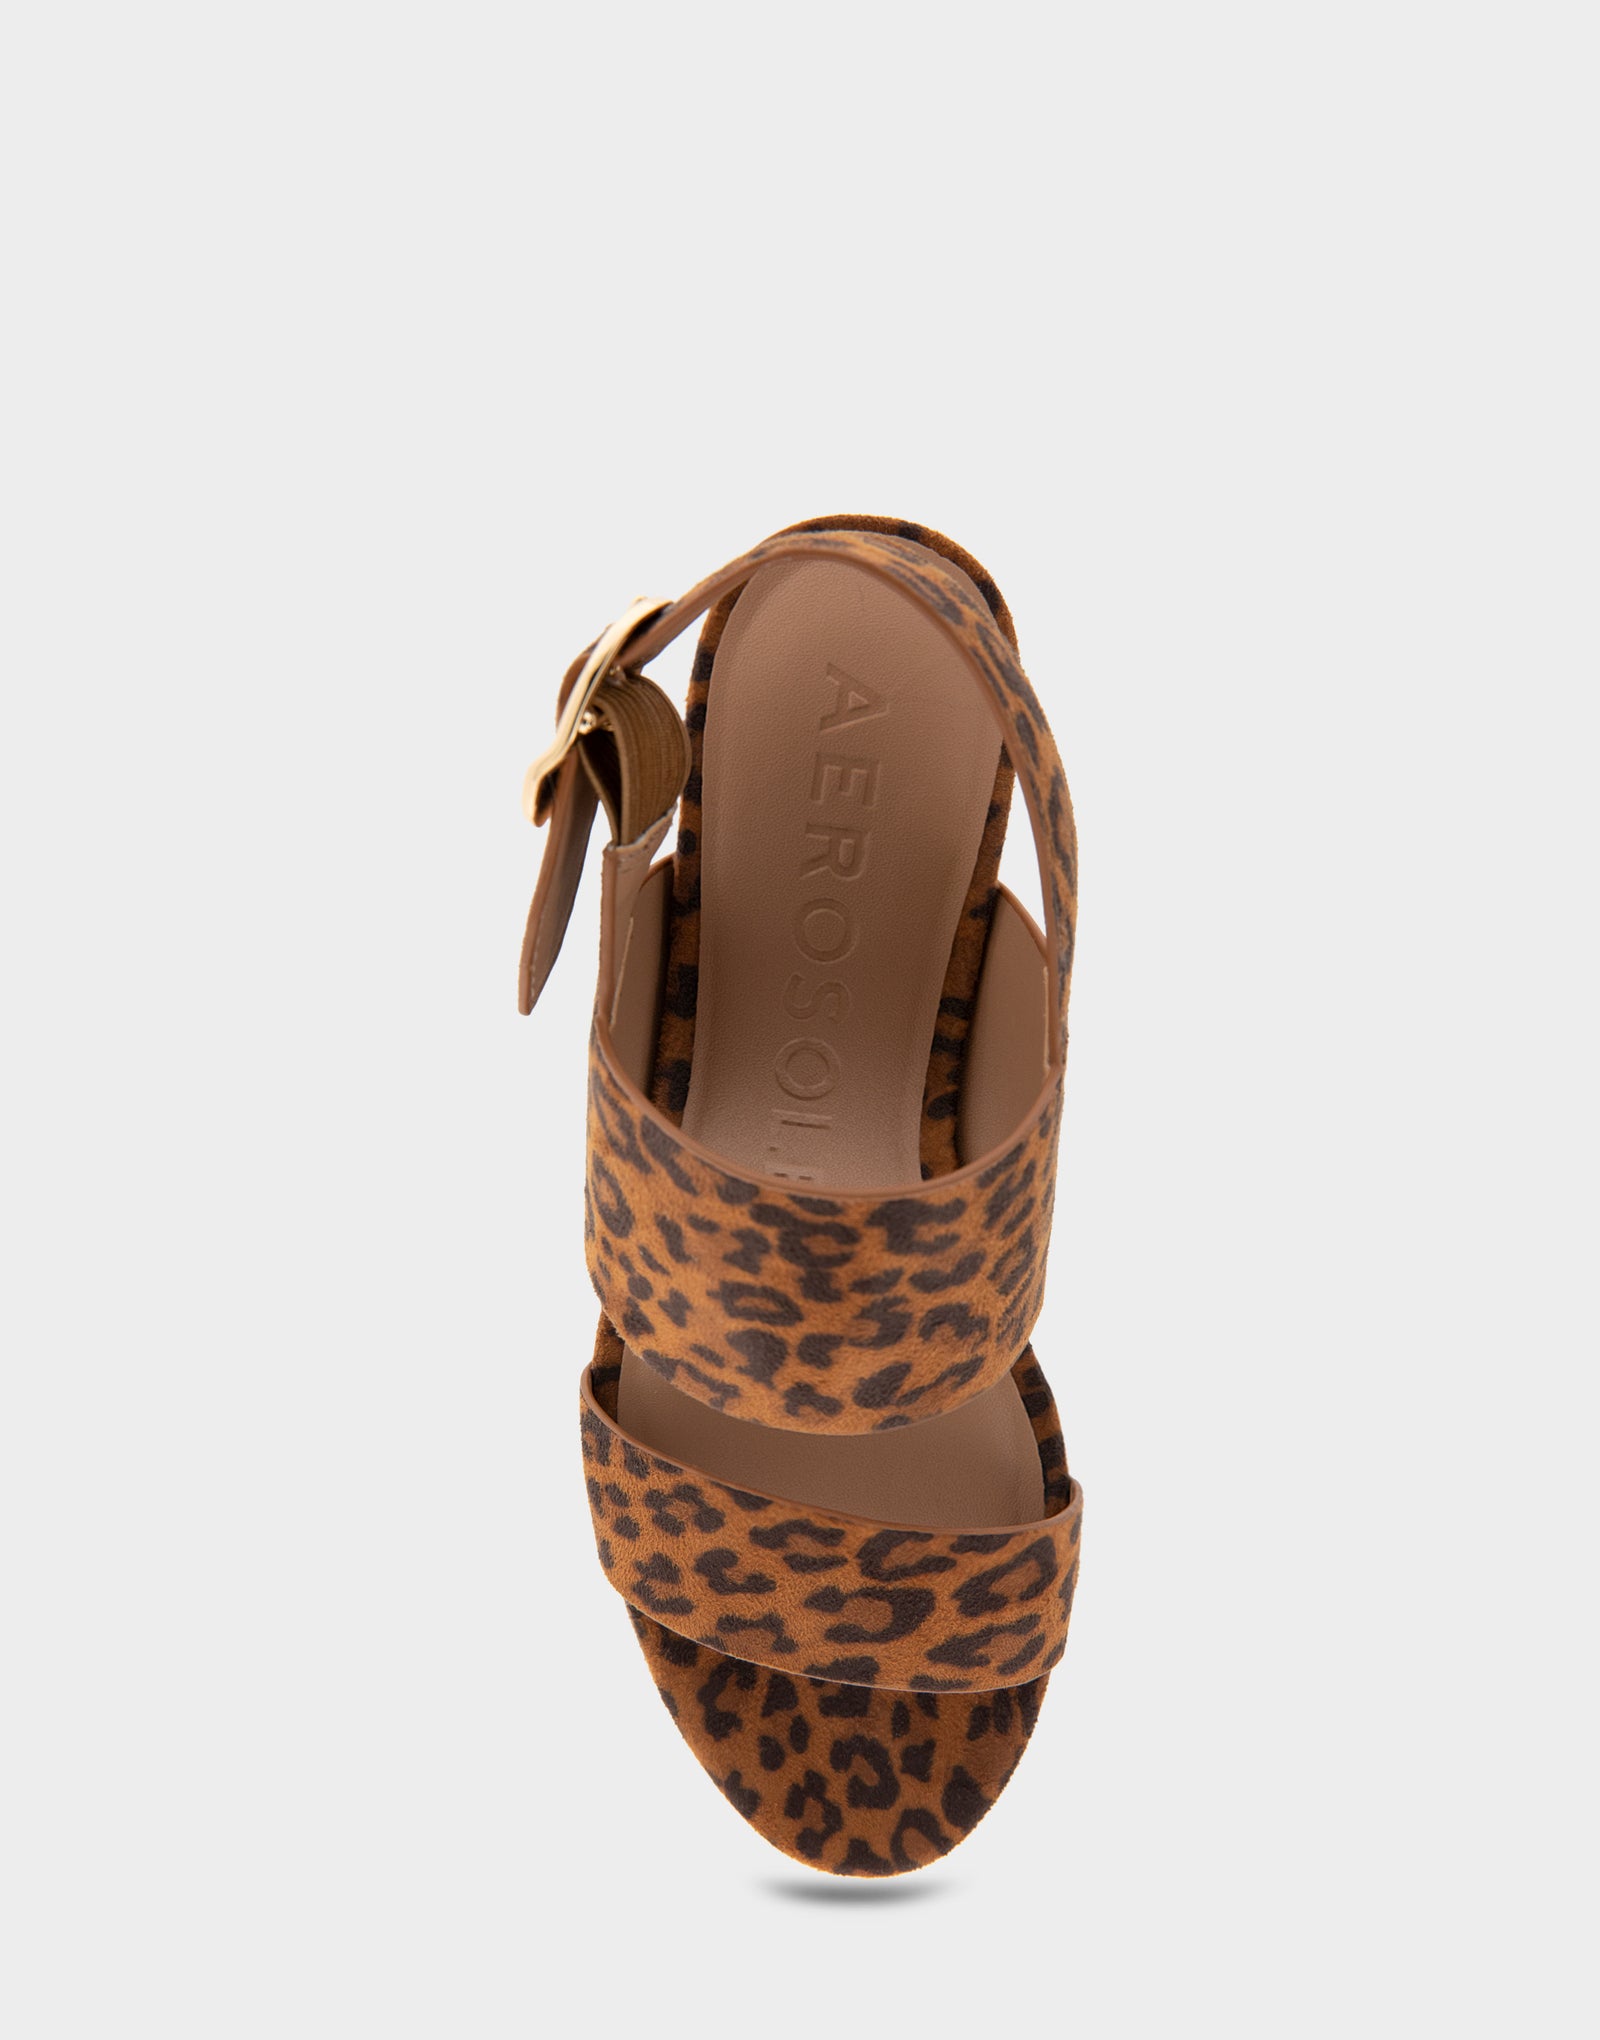 Women's Platform Sandal in Leopard Print